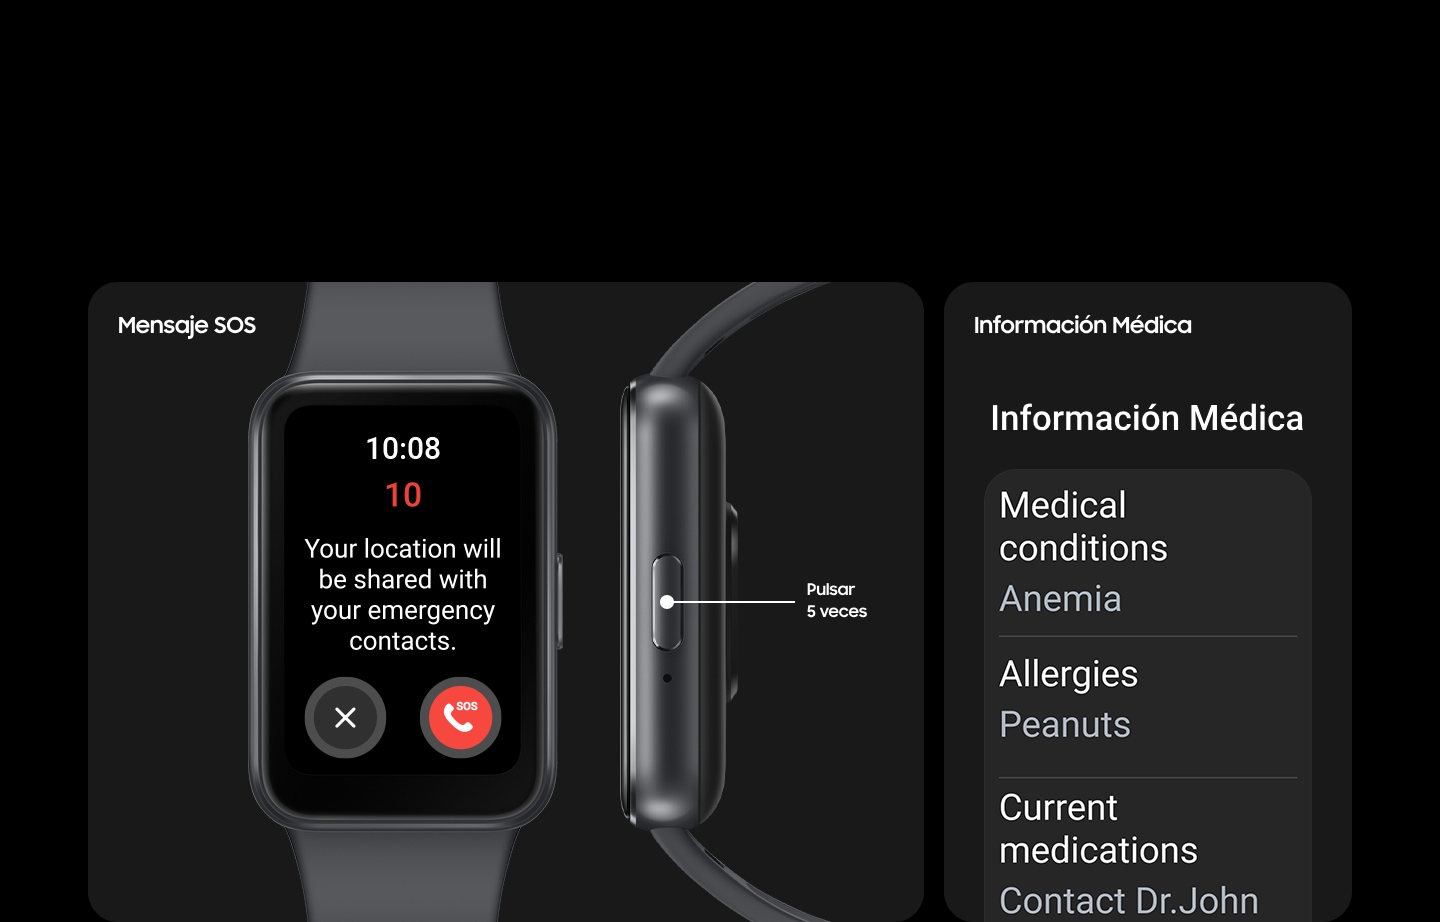 Se muestra un Galaxy Fit3 con la pantalla de Mensaje SOS con un botón de Cancelar y otro de Llamada de Emergencia. A su derecha se muestra el botón Inicio con el texto "Pulsar 5 veces". A su lado está la pantalla de información médica, que muestra las enfermedades, alergias y medicamentos actuales.